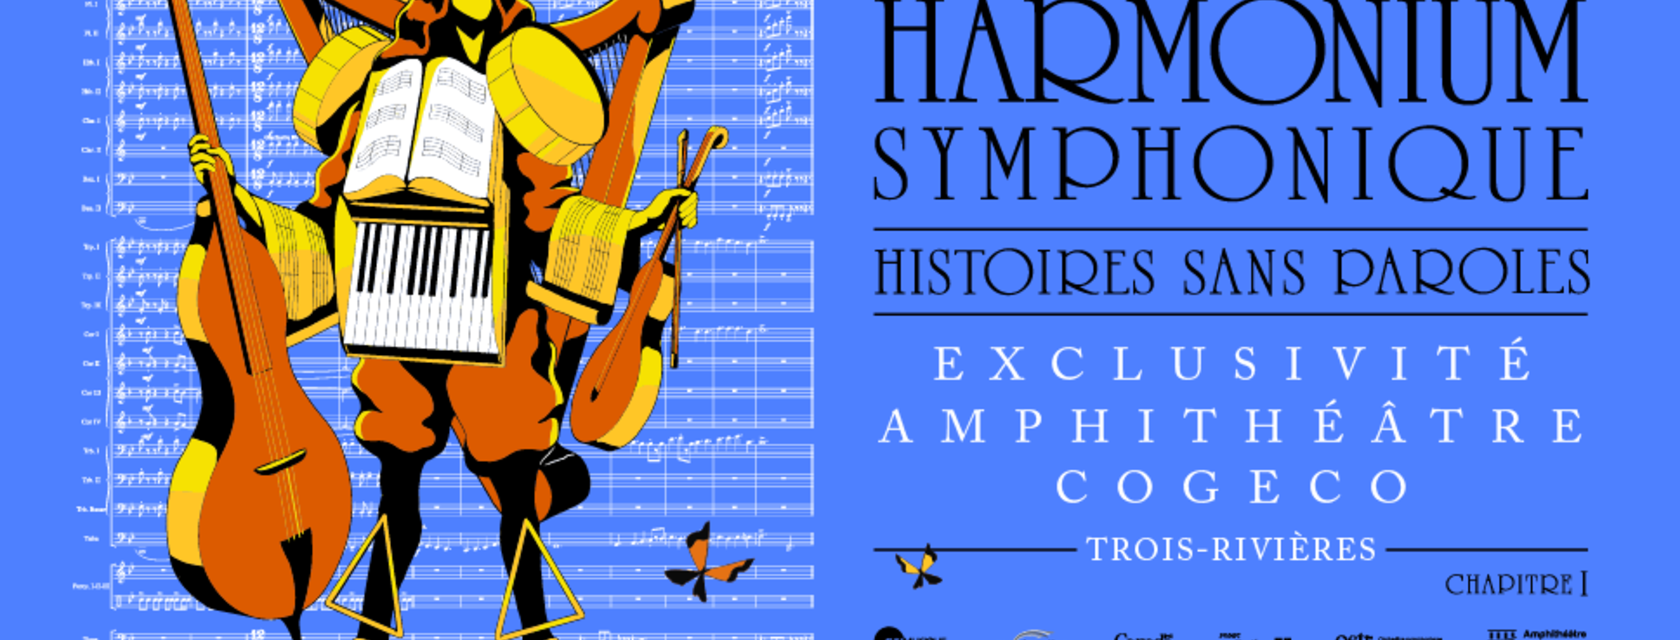 GSI Musique présente : Histoires sans paroles Harmonium symphonique - Un concert exclusif à l’Amphithéâtre Cogeco de Trois-Rivières